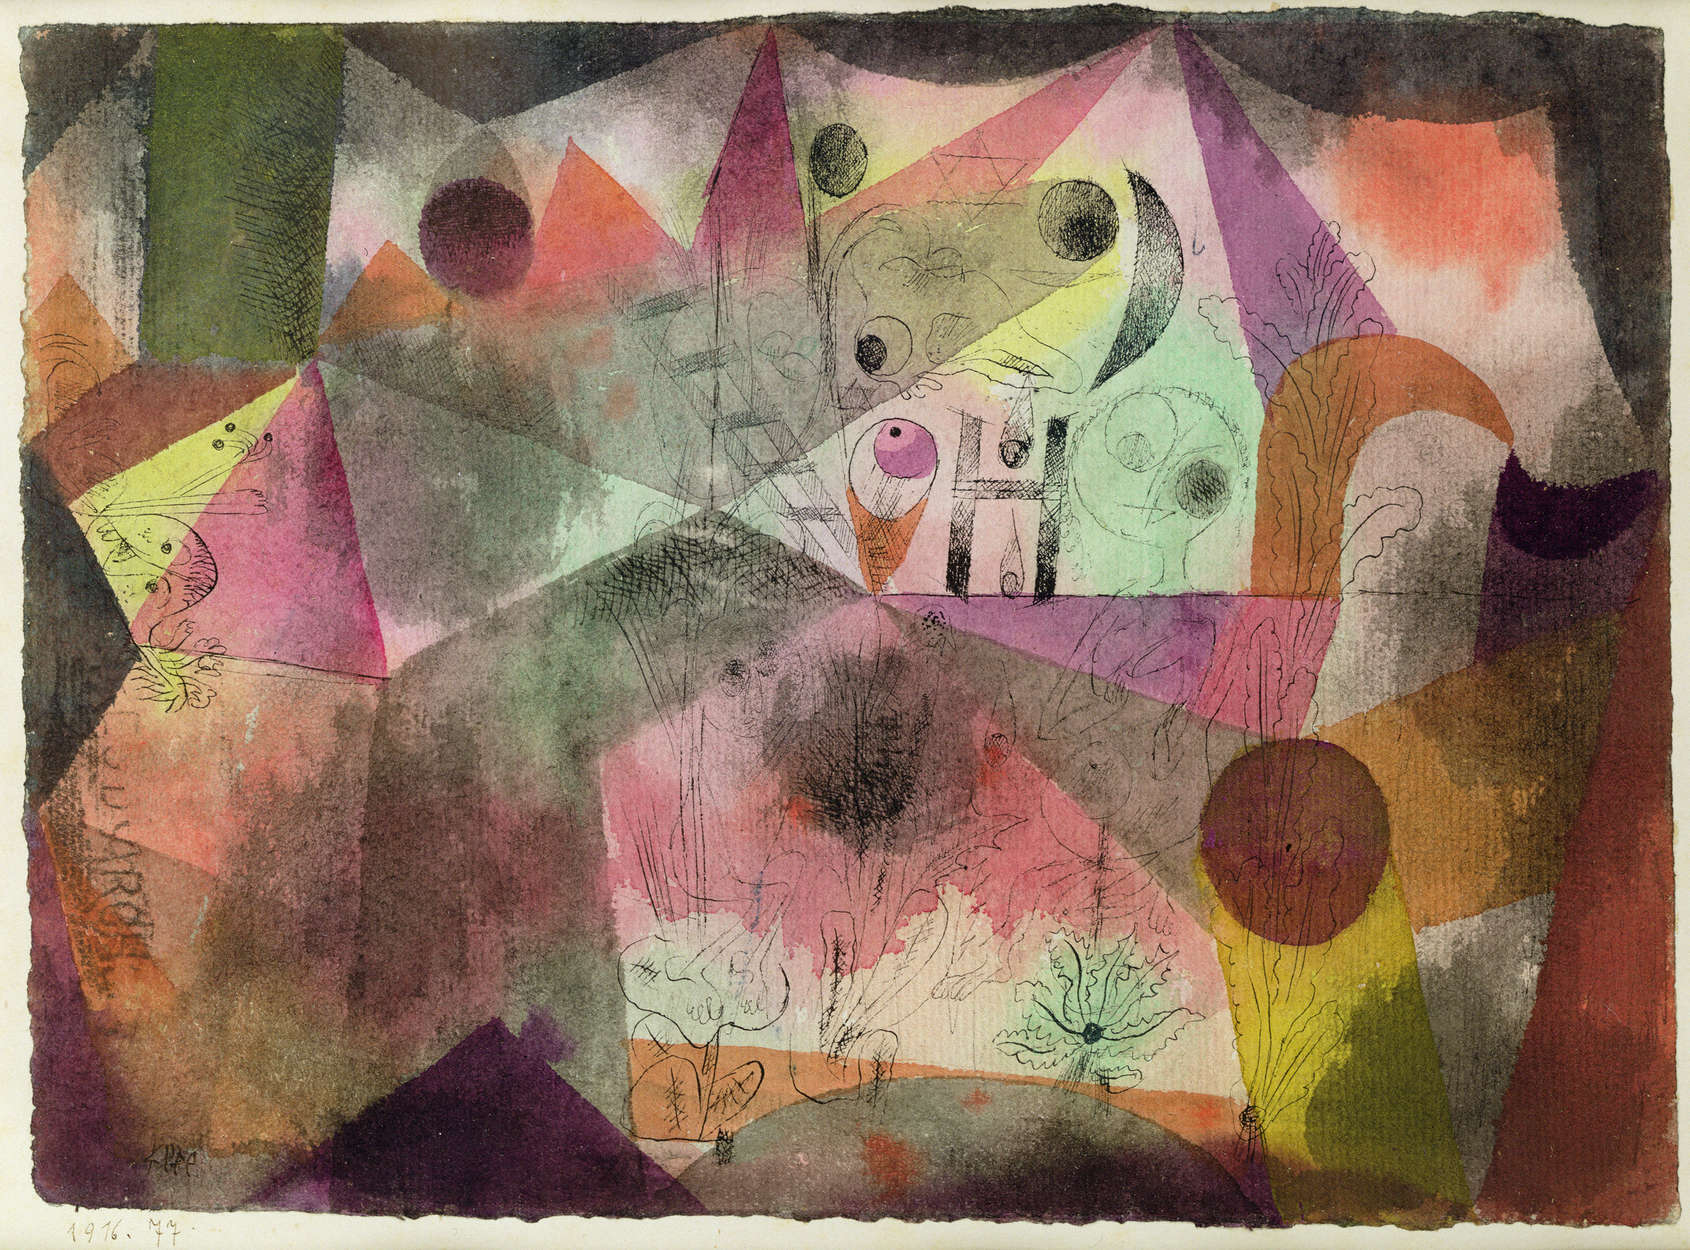             Fotomurali "Con la H" di Paul Klee
        